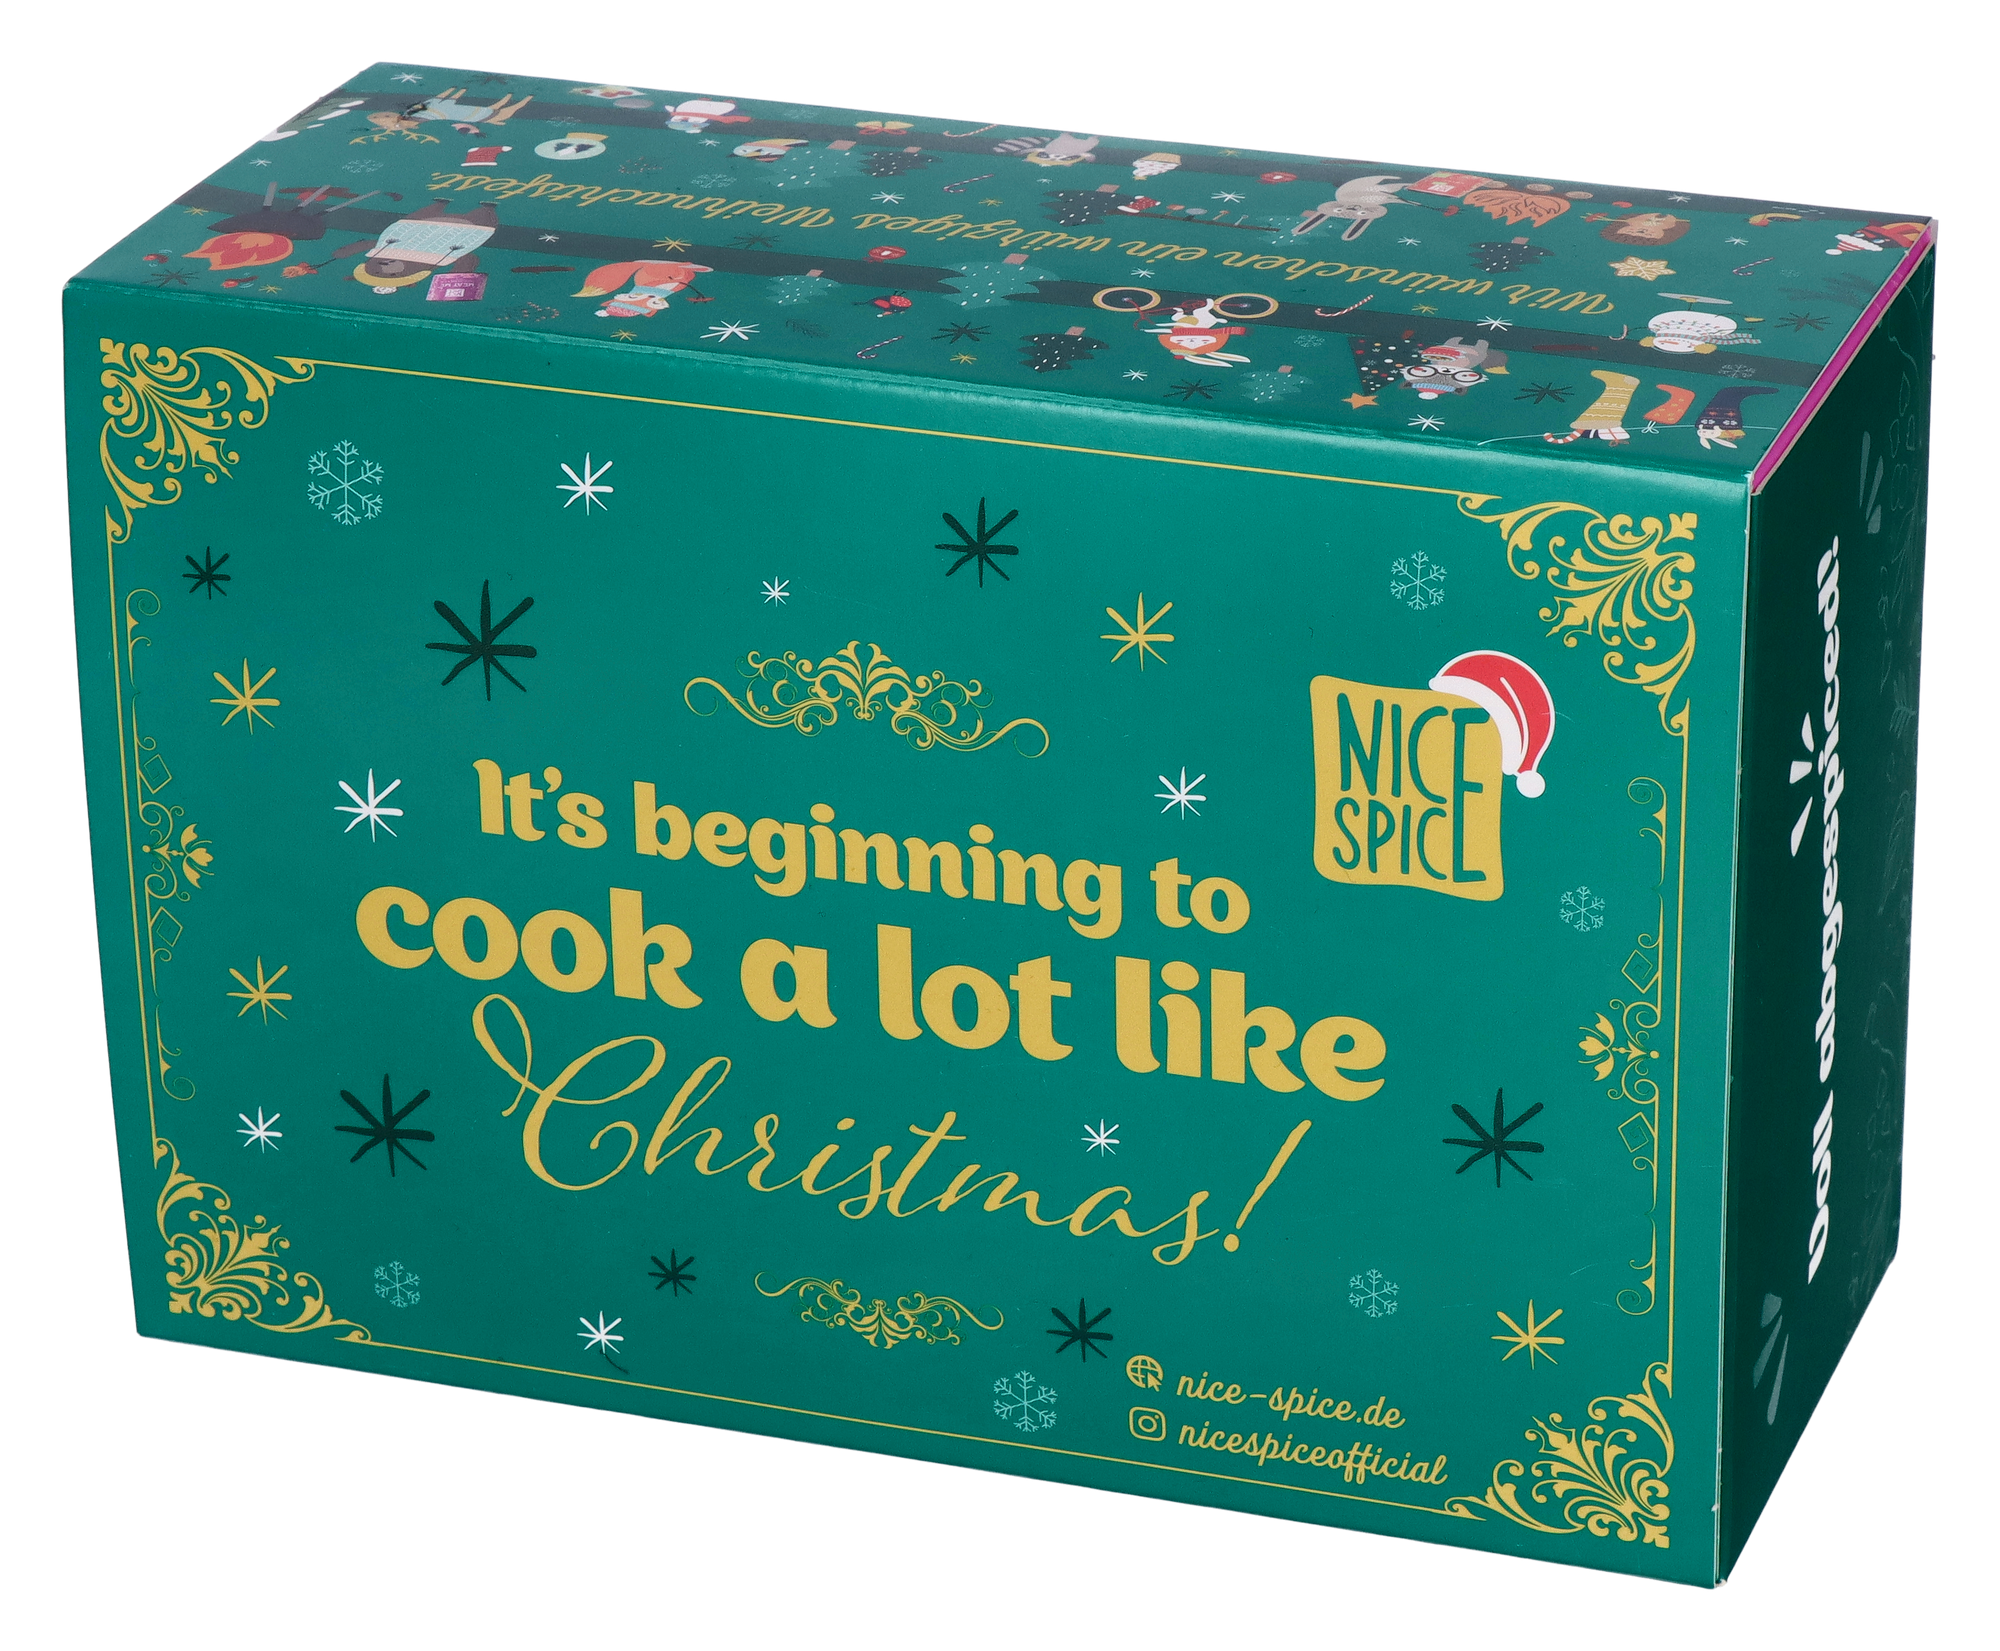 NICE SPICE Weihnachtsbox mit sechs Gewürzen ohne Hintergrund